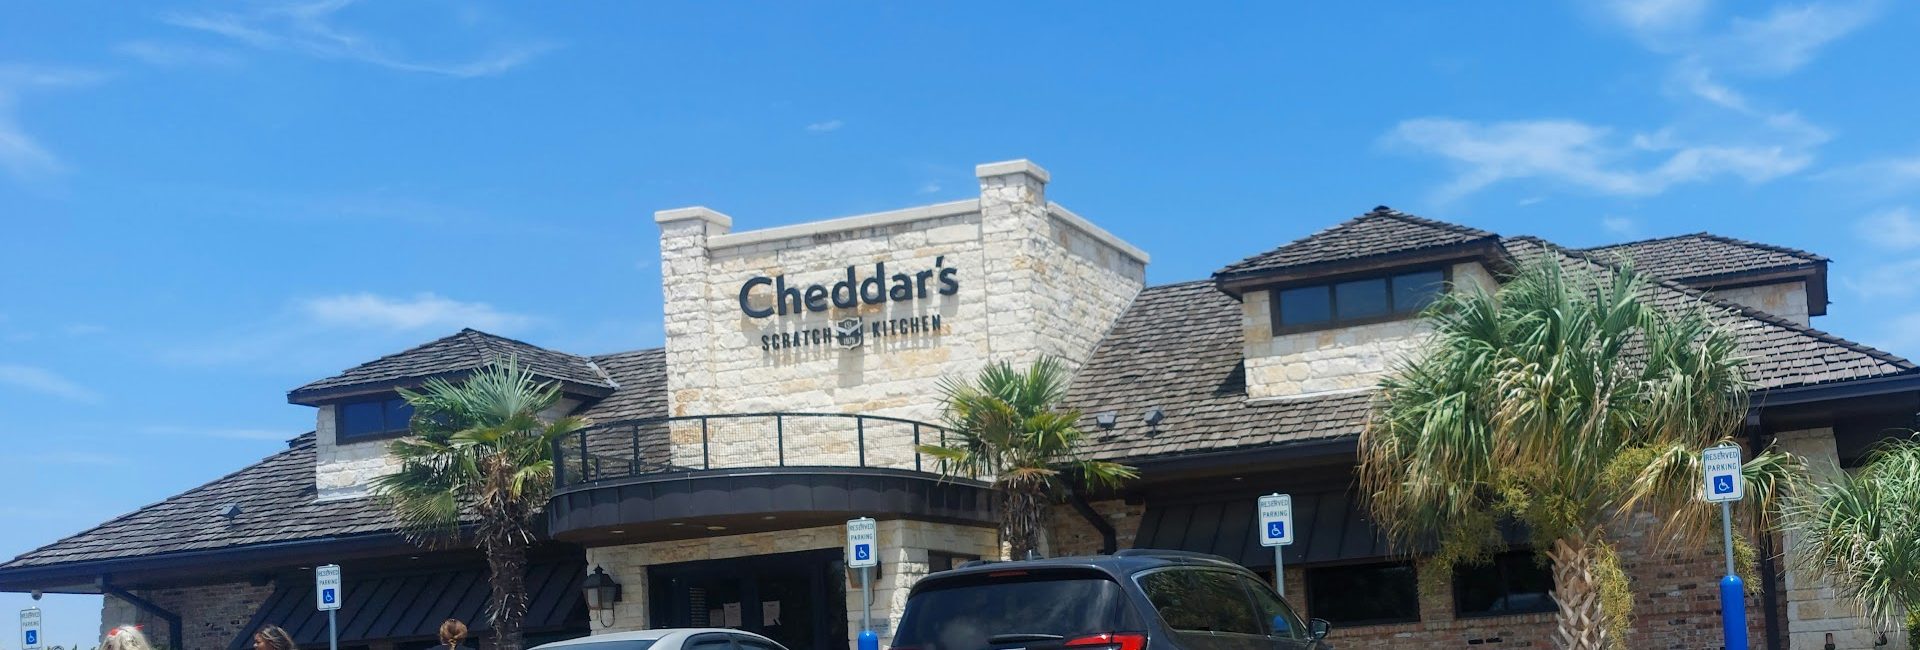 Cheddar’s Scratch Kitchen 6